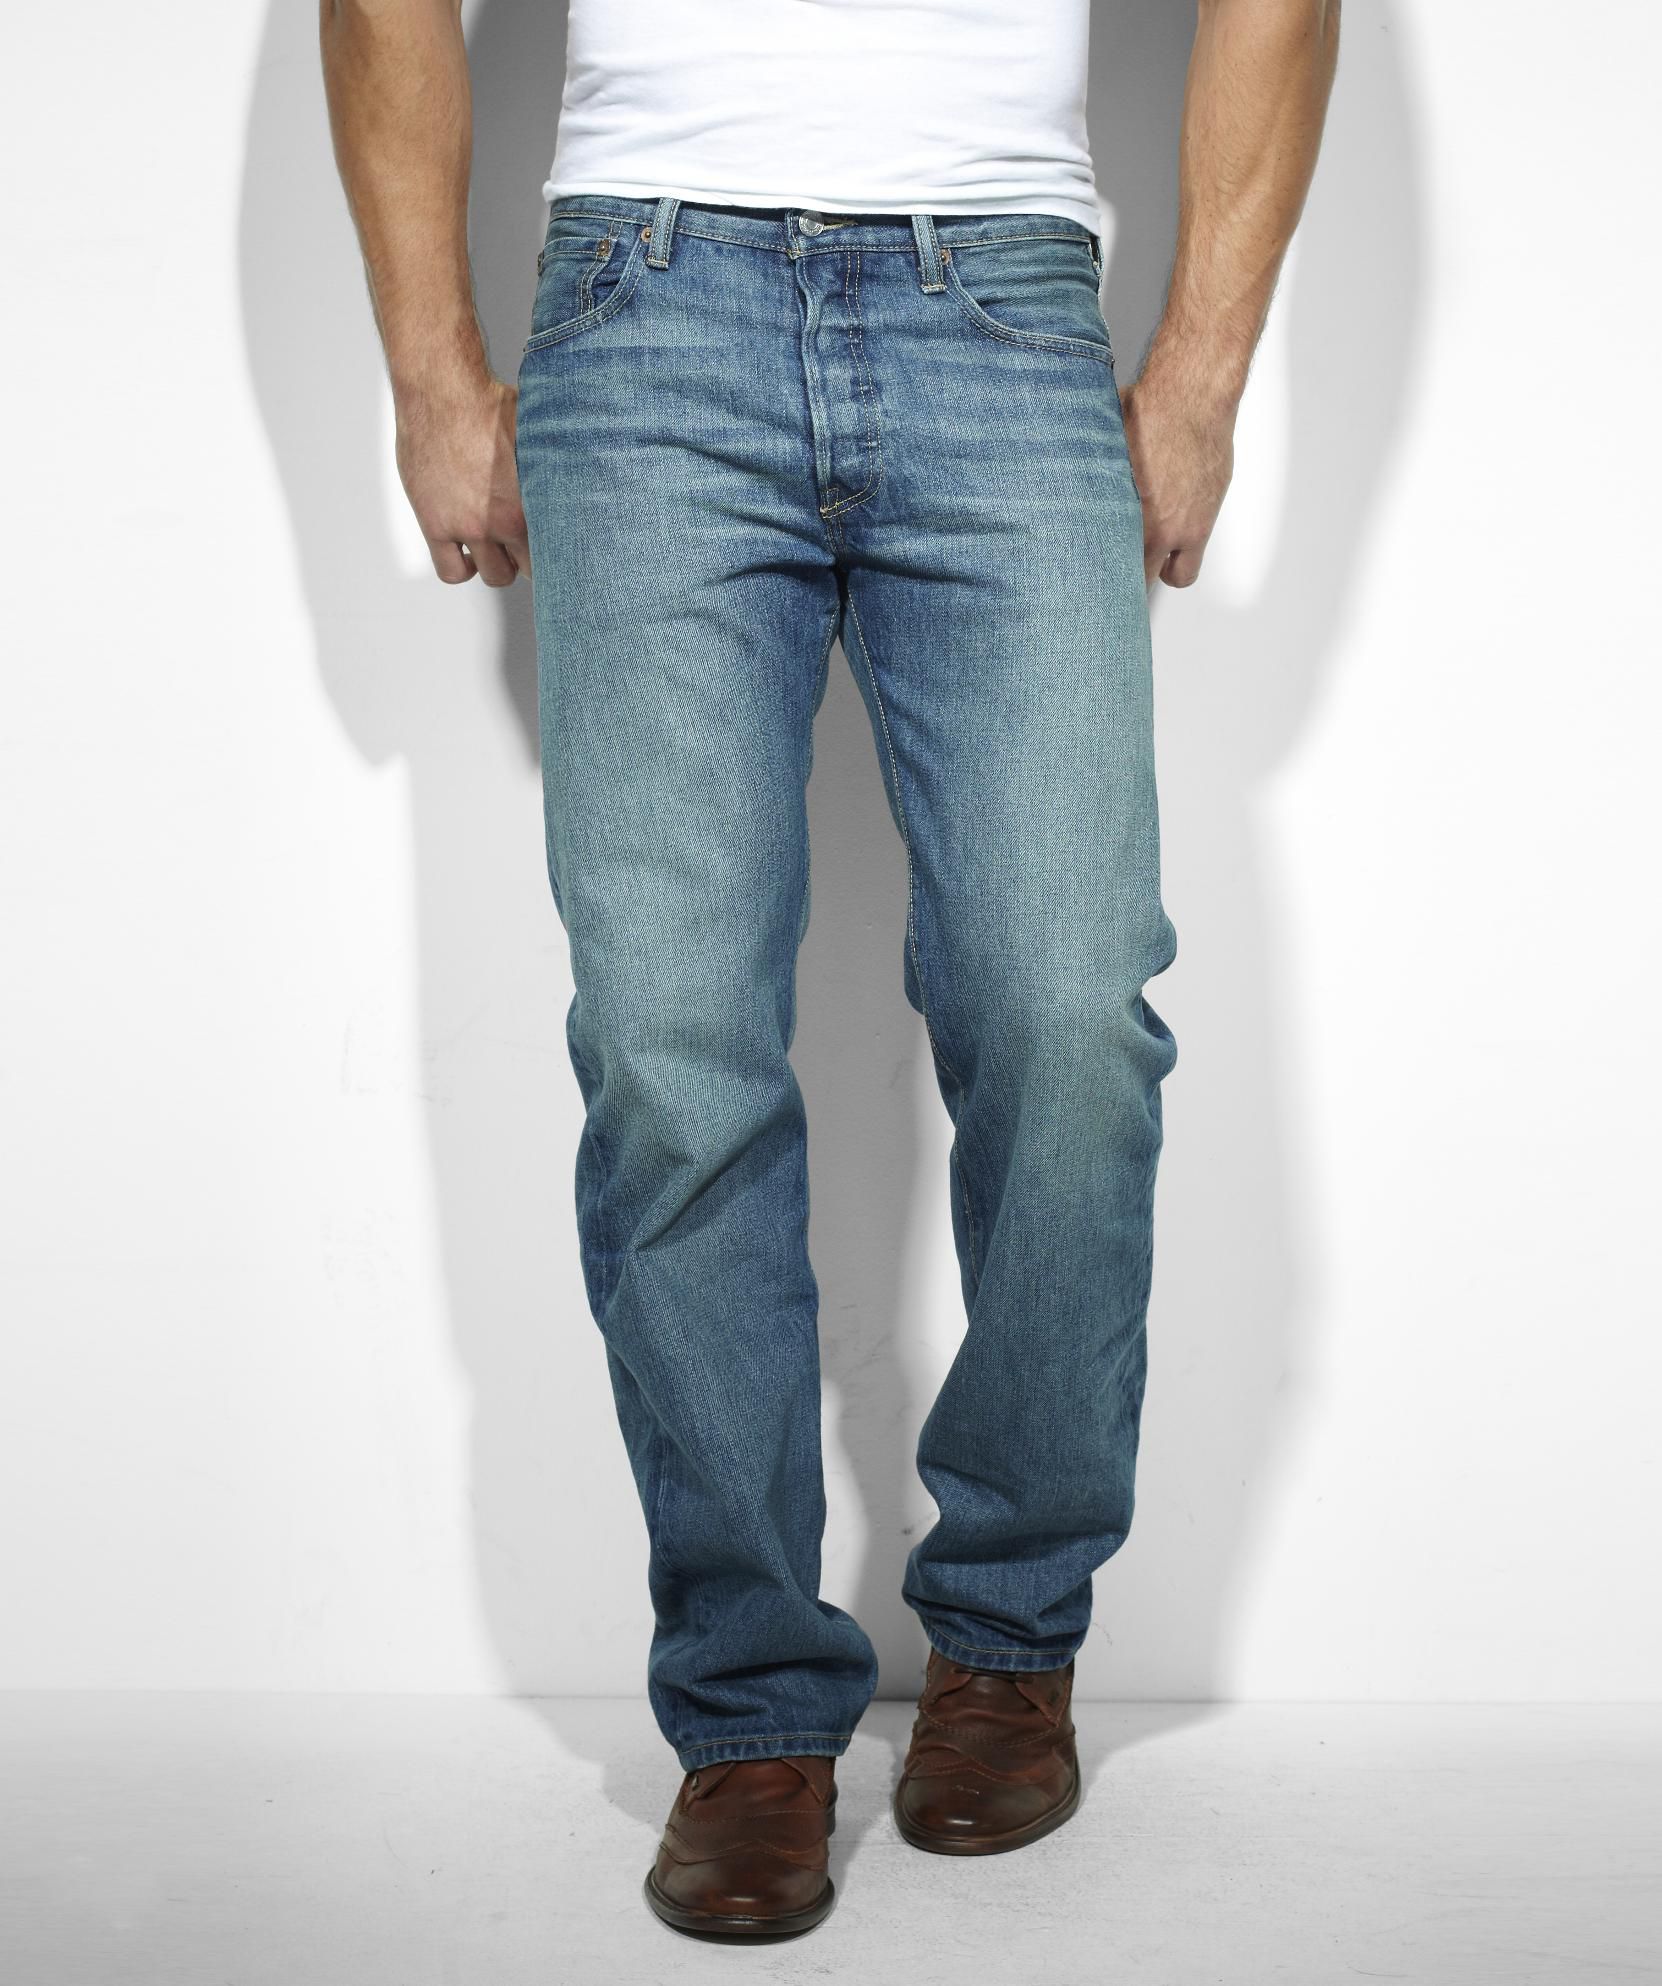 Levi's Clearance Men's 501 Original Fit Jeans - Clothing, Shoes ...